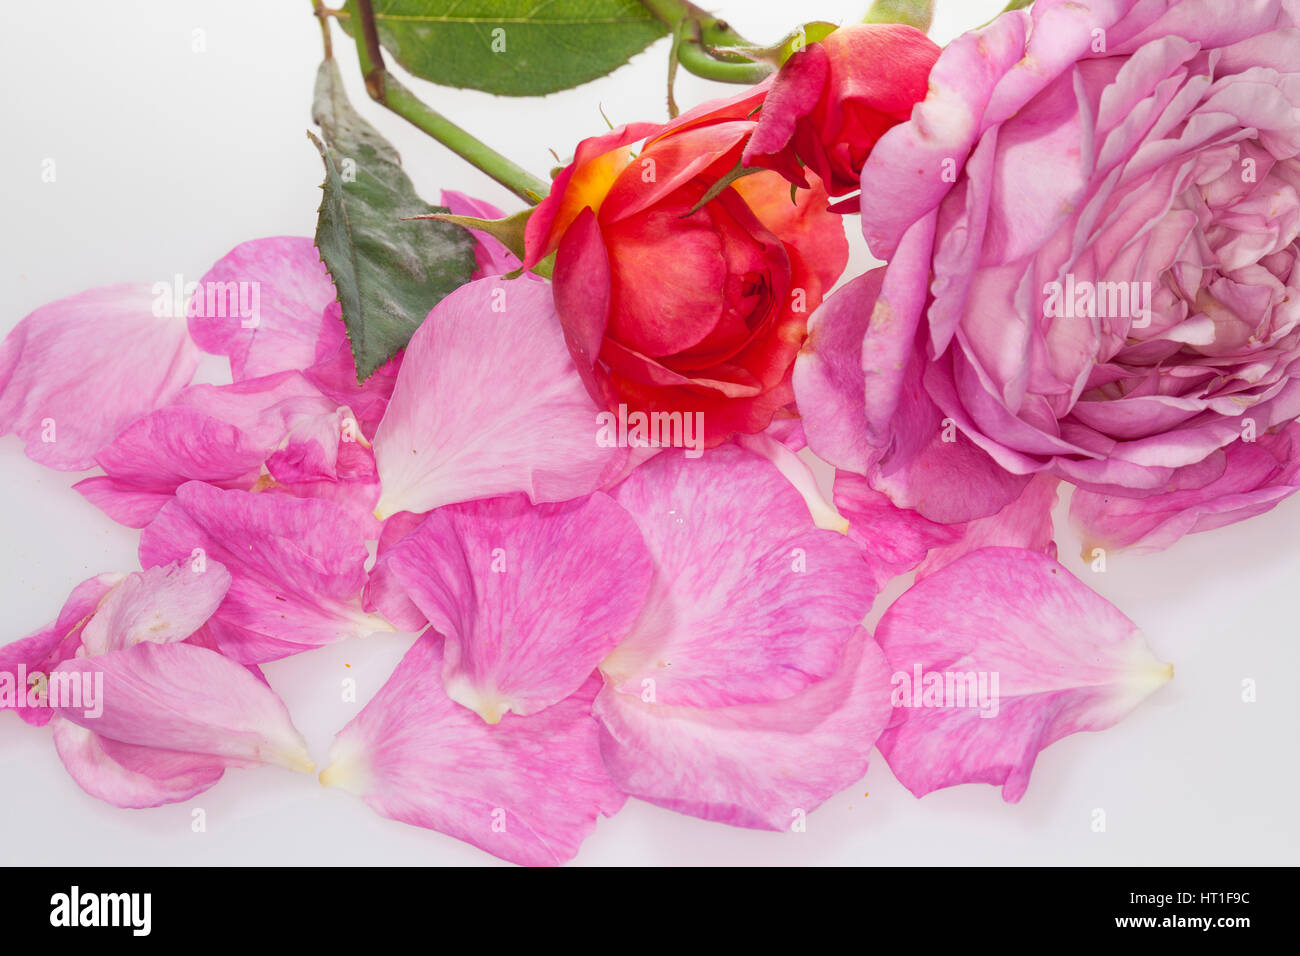 Rose, Rosen-Blüten, Rosen-Blütenblätter, Blütenblätter, Blütenblatt, Garten-Rose, Gartenrose, Kulturrose, Kultur-Rose, Rosa spec., Rose Stock Photo